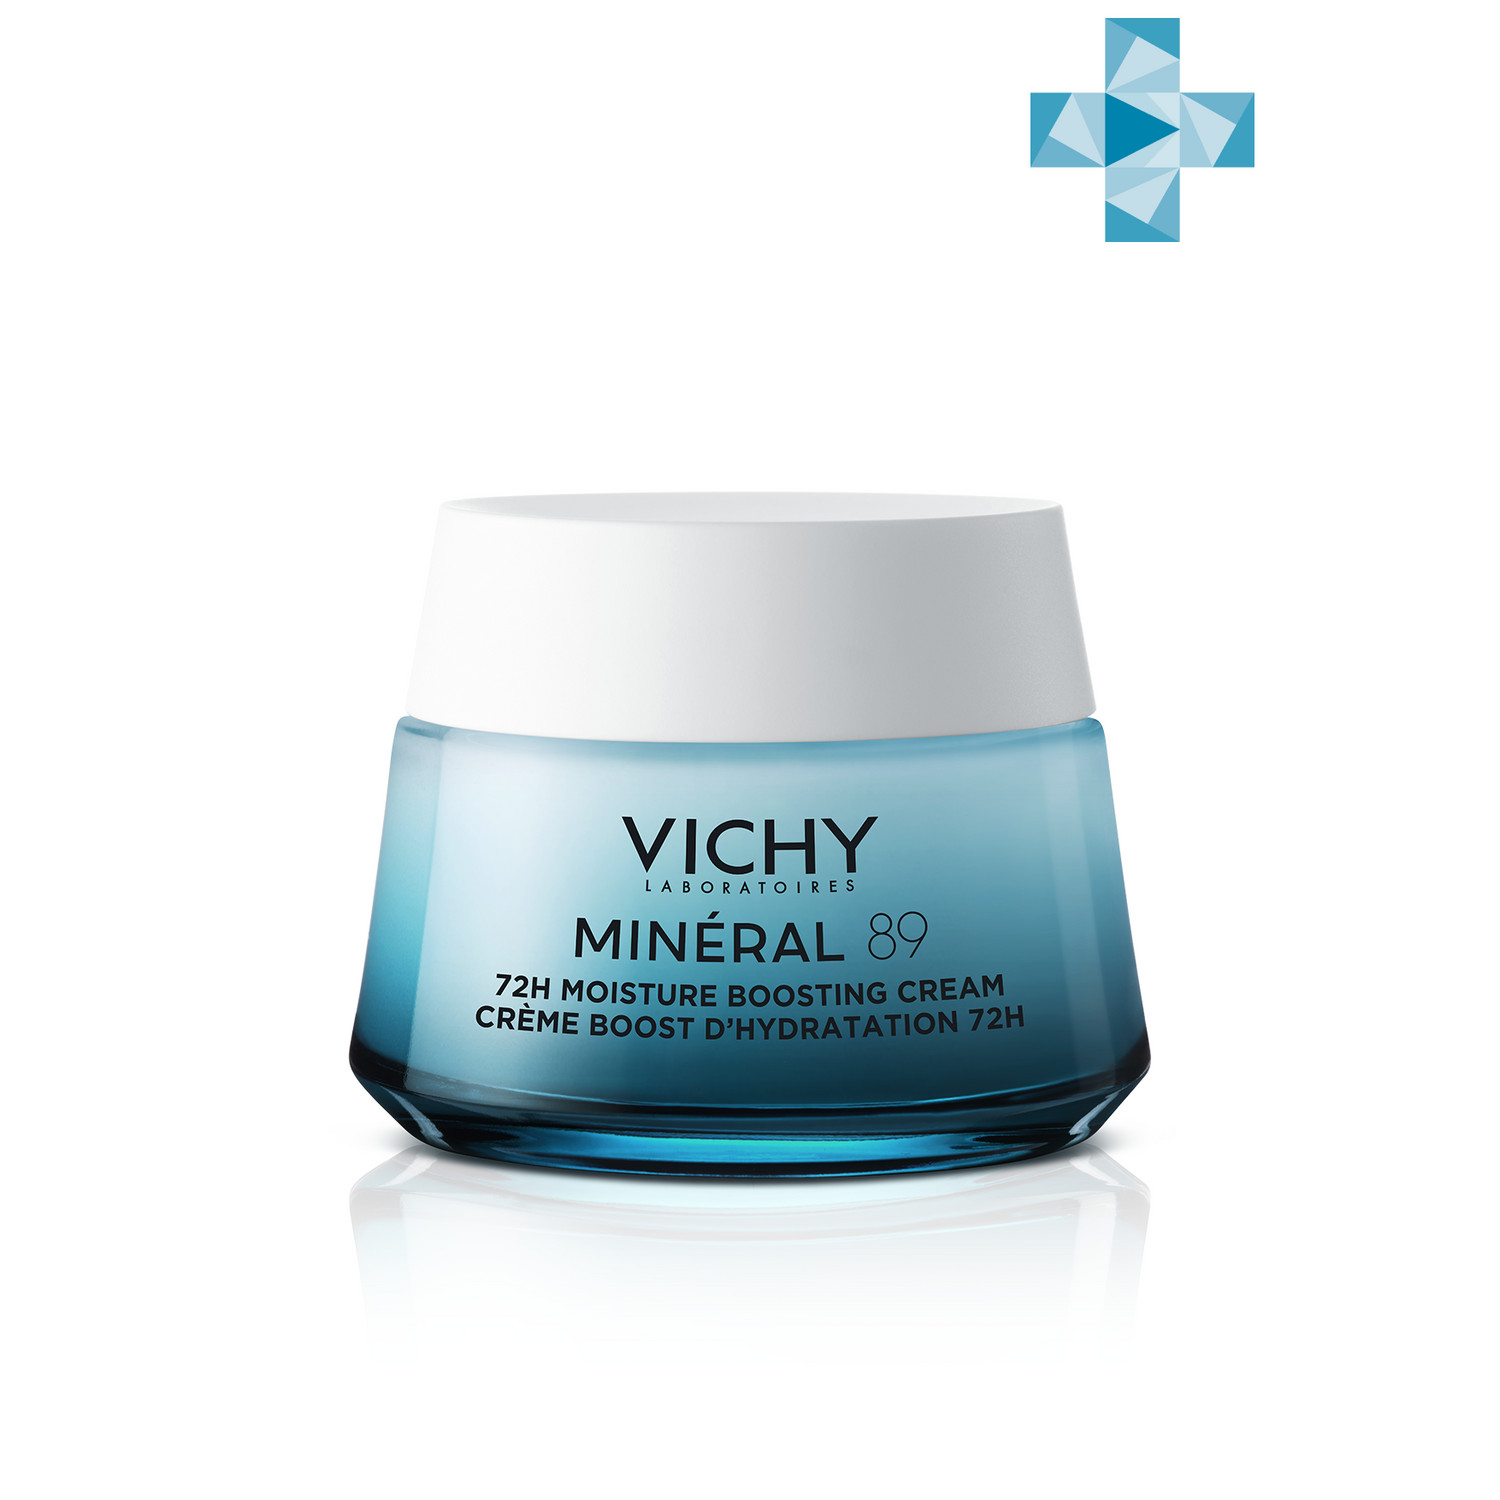 Vichy Интенсивно увлажняющий крем 72ч для всех типов кожи, 50 мл (Vichy, Mineral 89) vichy mineral 89 крем интенсивно увлажняющий 72 часа для всех типов кожи 50 мл